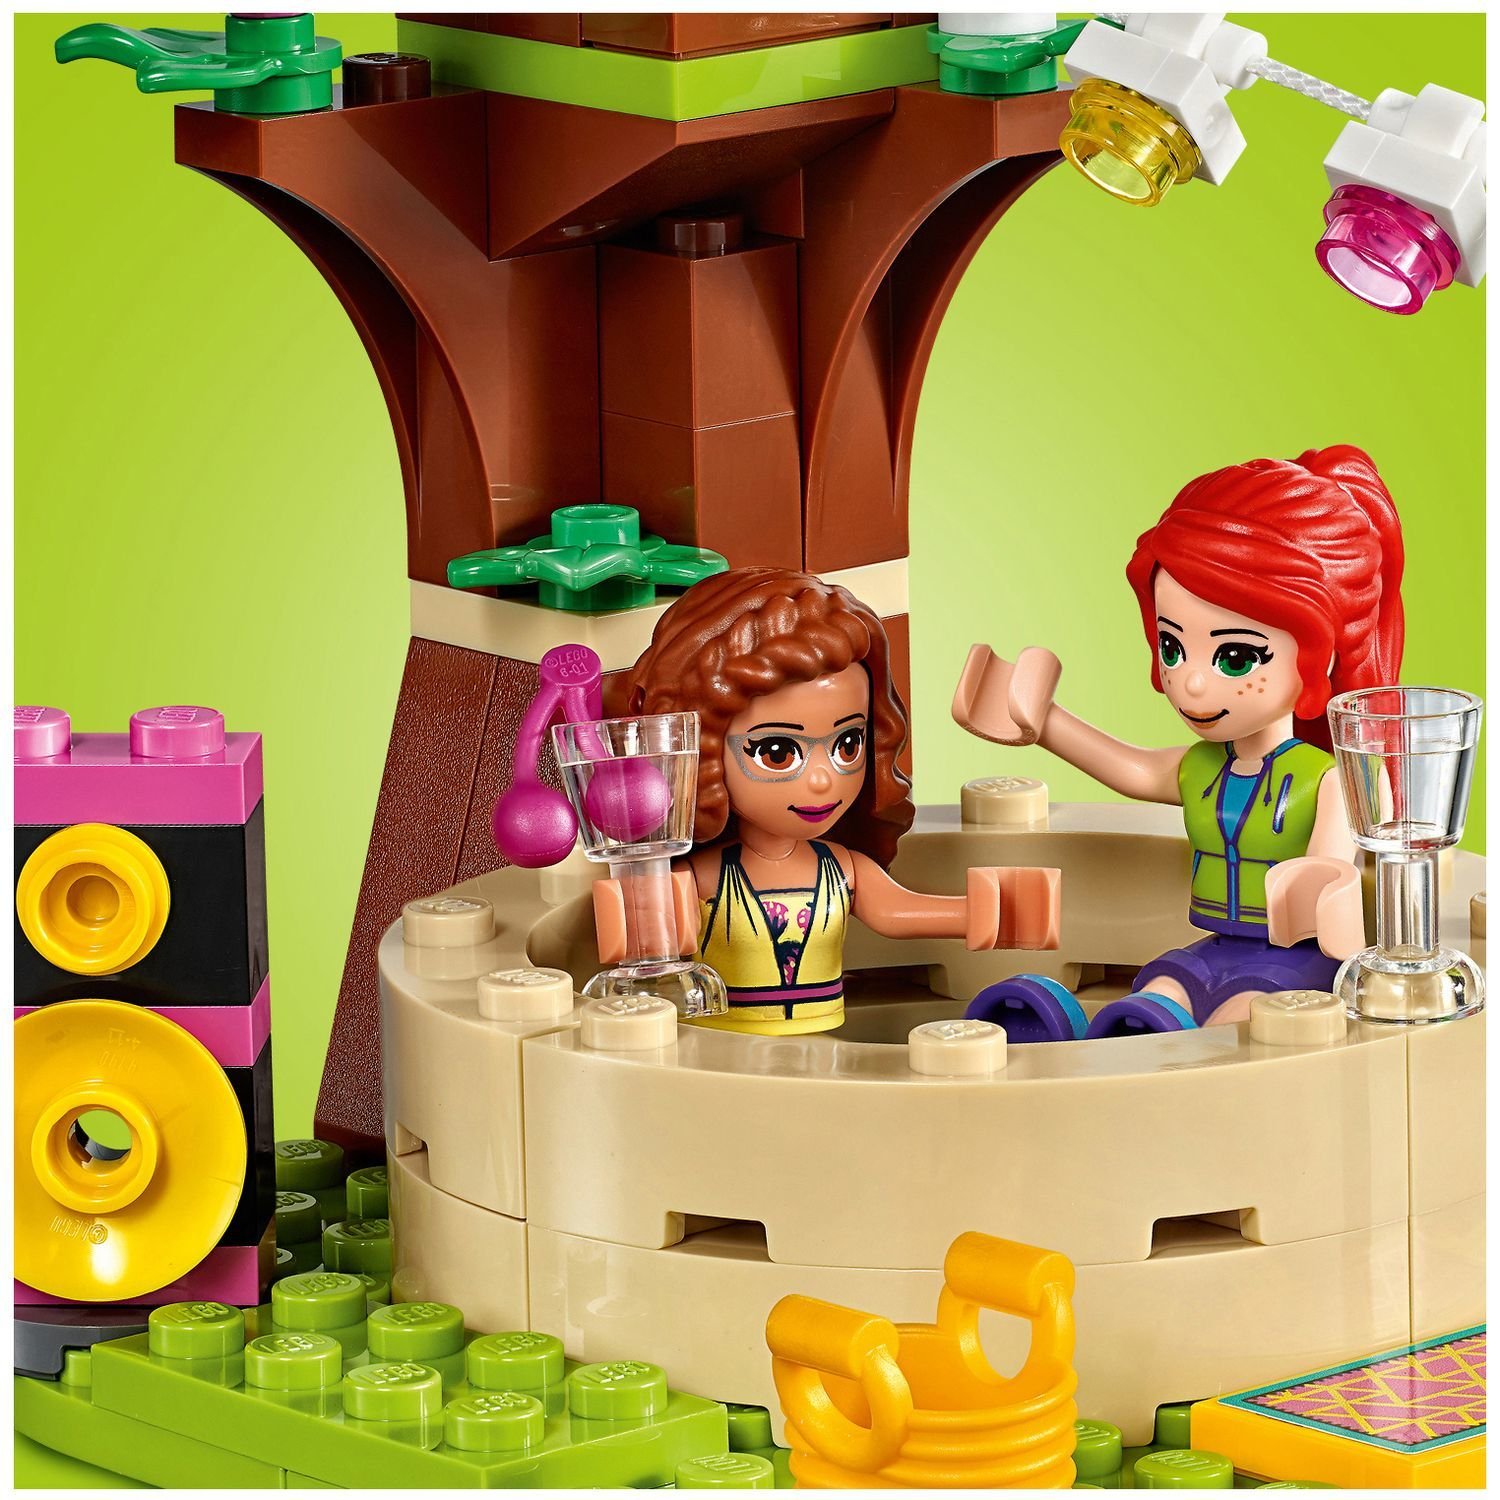 Lego Friends 41392 Роскошный отдых на природе